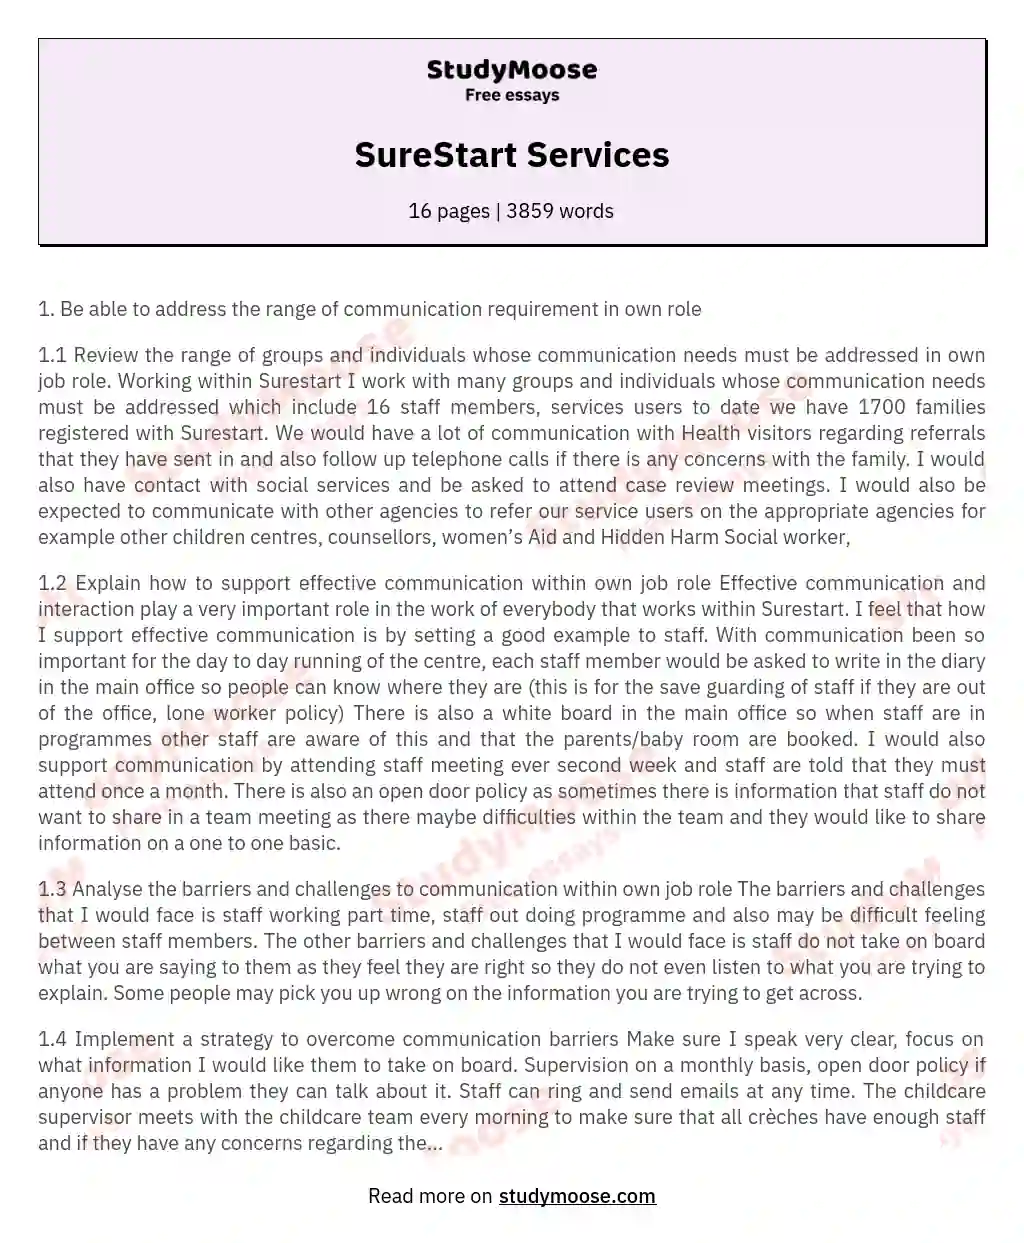 SureStart Services essay